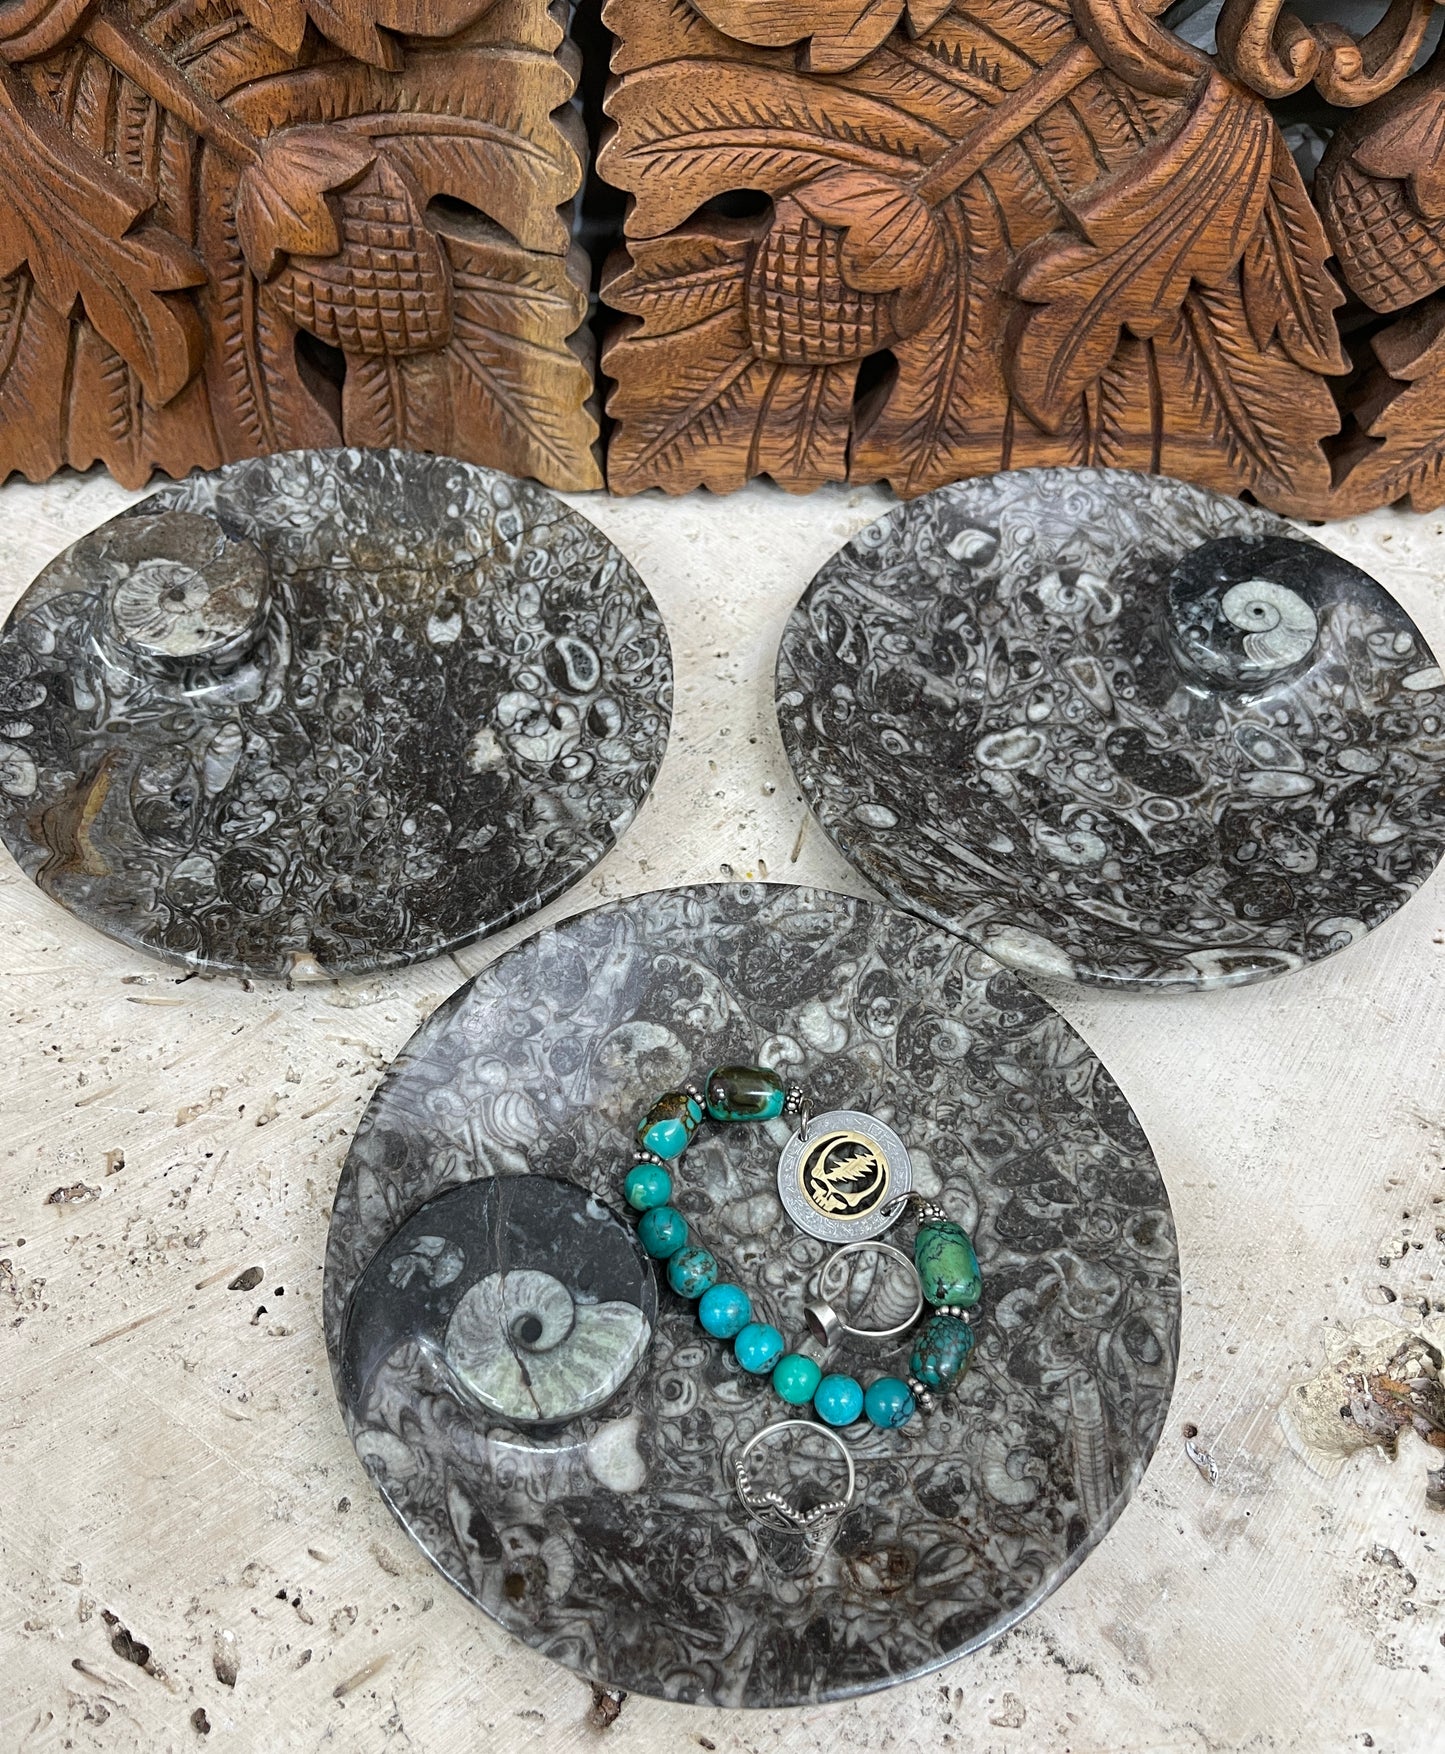 Ammonite fossil jewelry / key dish